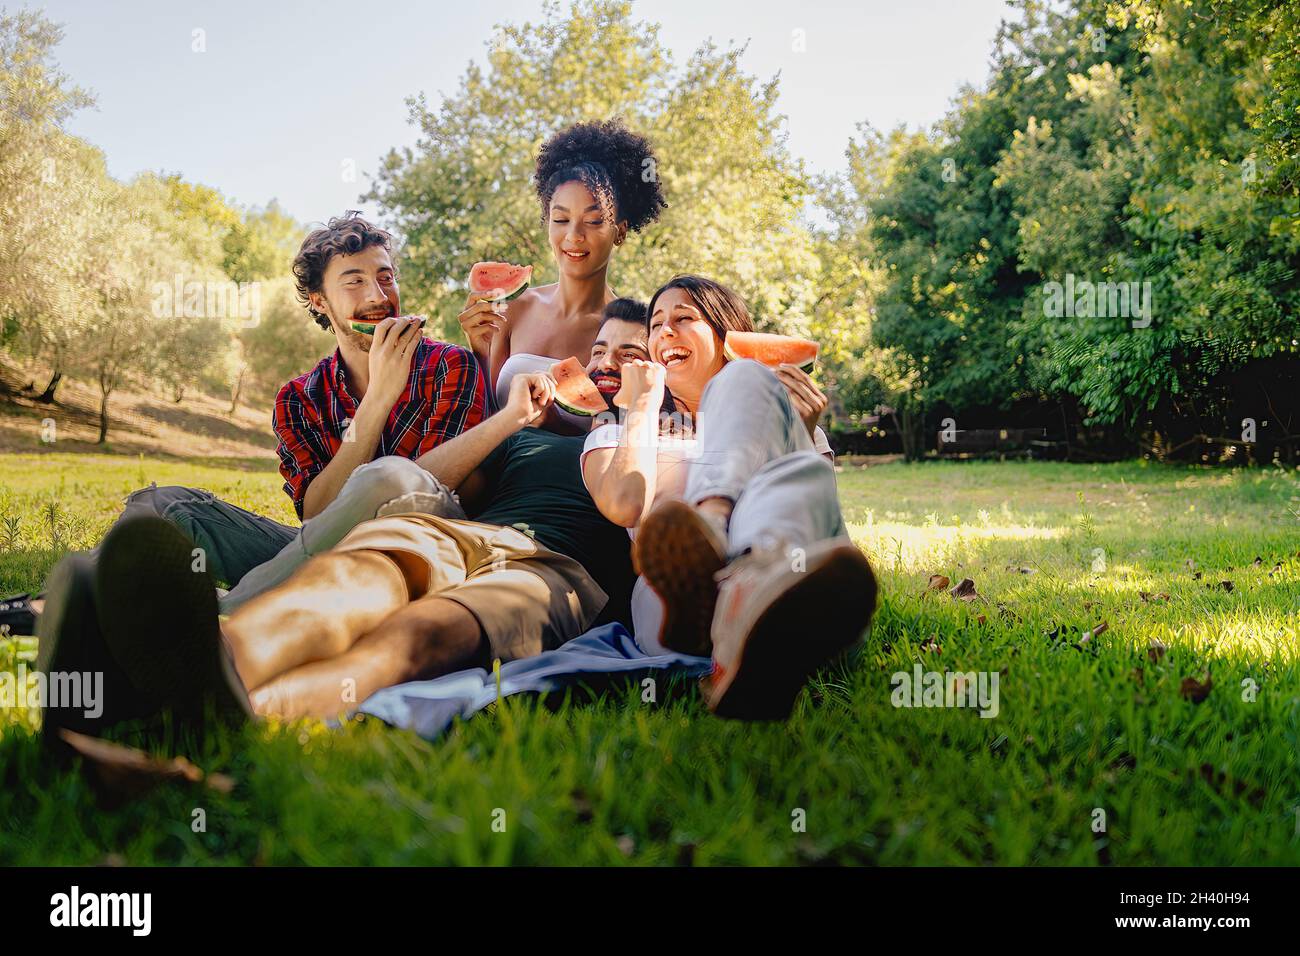 Eine Gruppe von glücklichen jungen Menschen, die beim Picknick auf dem Gras sitzen und Spaß daran haben, Wassermelone zu essen. Gefiltertes Bild mit lebendigen warmen Farben. Stockfoto